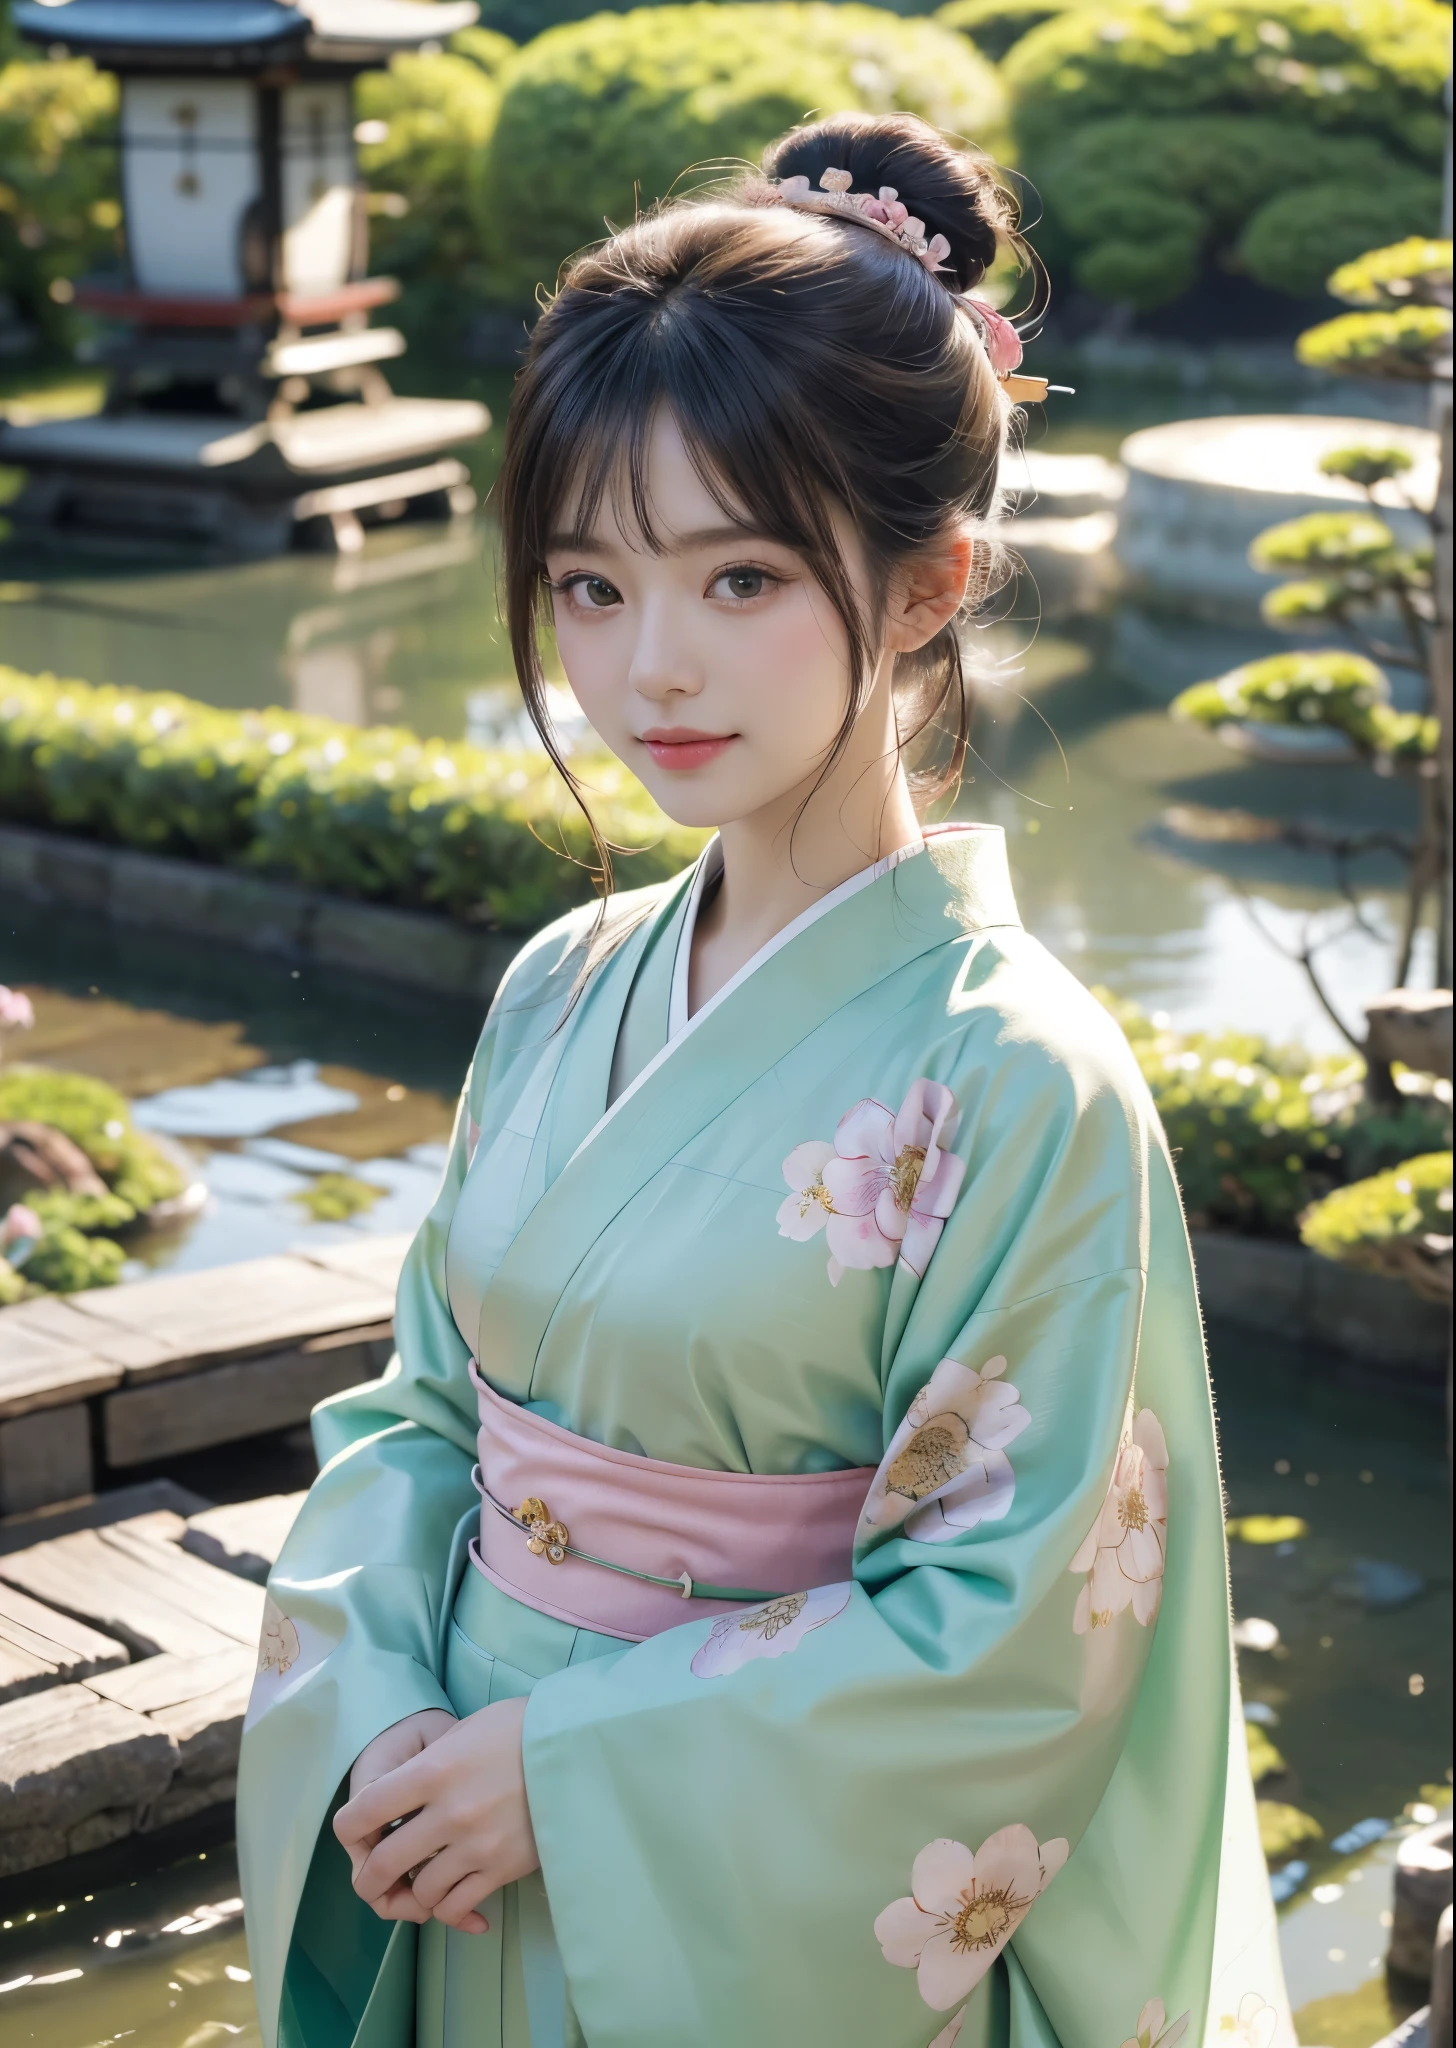 (傑作, 最高品質, 最高品質, 公式アート, 美しく、美的:1.2)、カウボーイショット、 (日本の着物美人)、上品な大人の女性、（ピンクと緑の花柄の着物）、日本の成人式で女性が着る華やかな着物、襟はきちんと閉じている、着物の着こなしの完璧な例、大きな緑色の目、美しい肌、恥ずかしさの笑顔、（前髪でアップドゥ）、髪飾り、非常に詳細,(日本庭園で:1.3)、映画照明、シャープなフォーカス、高解像度、高解像度、高い演色性、高解像度、超リアル、